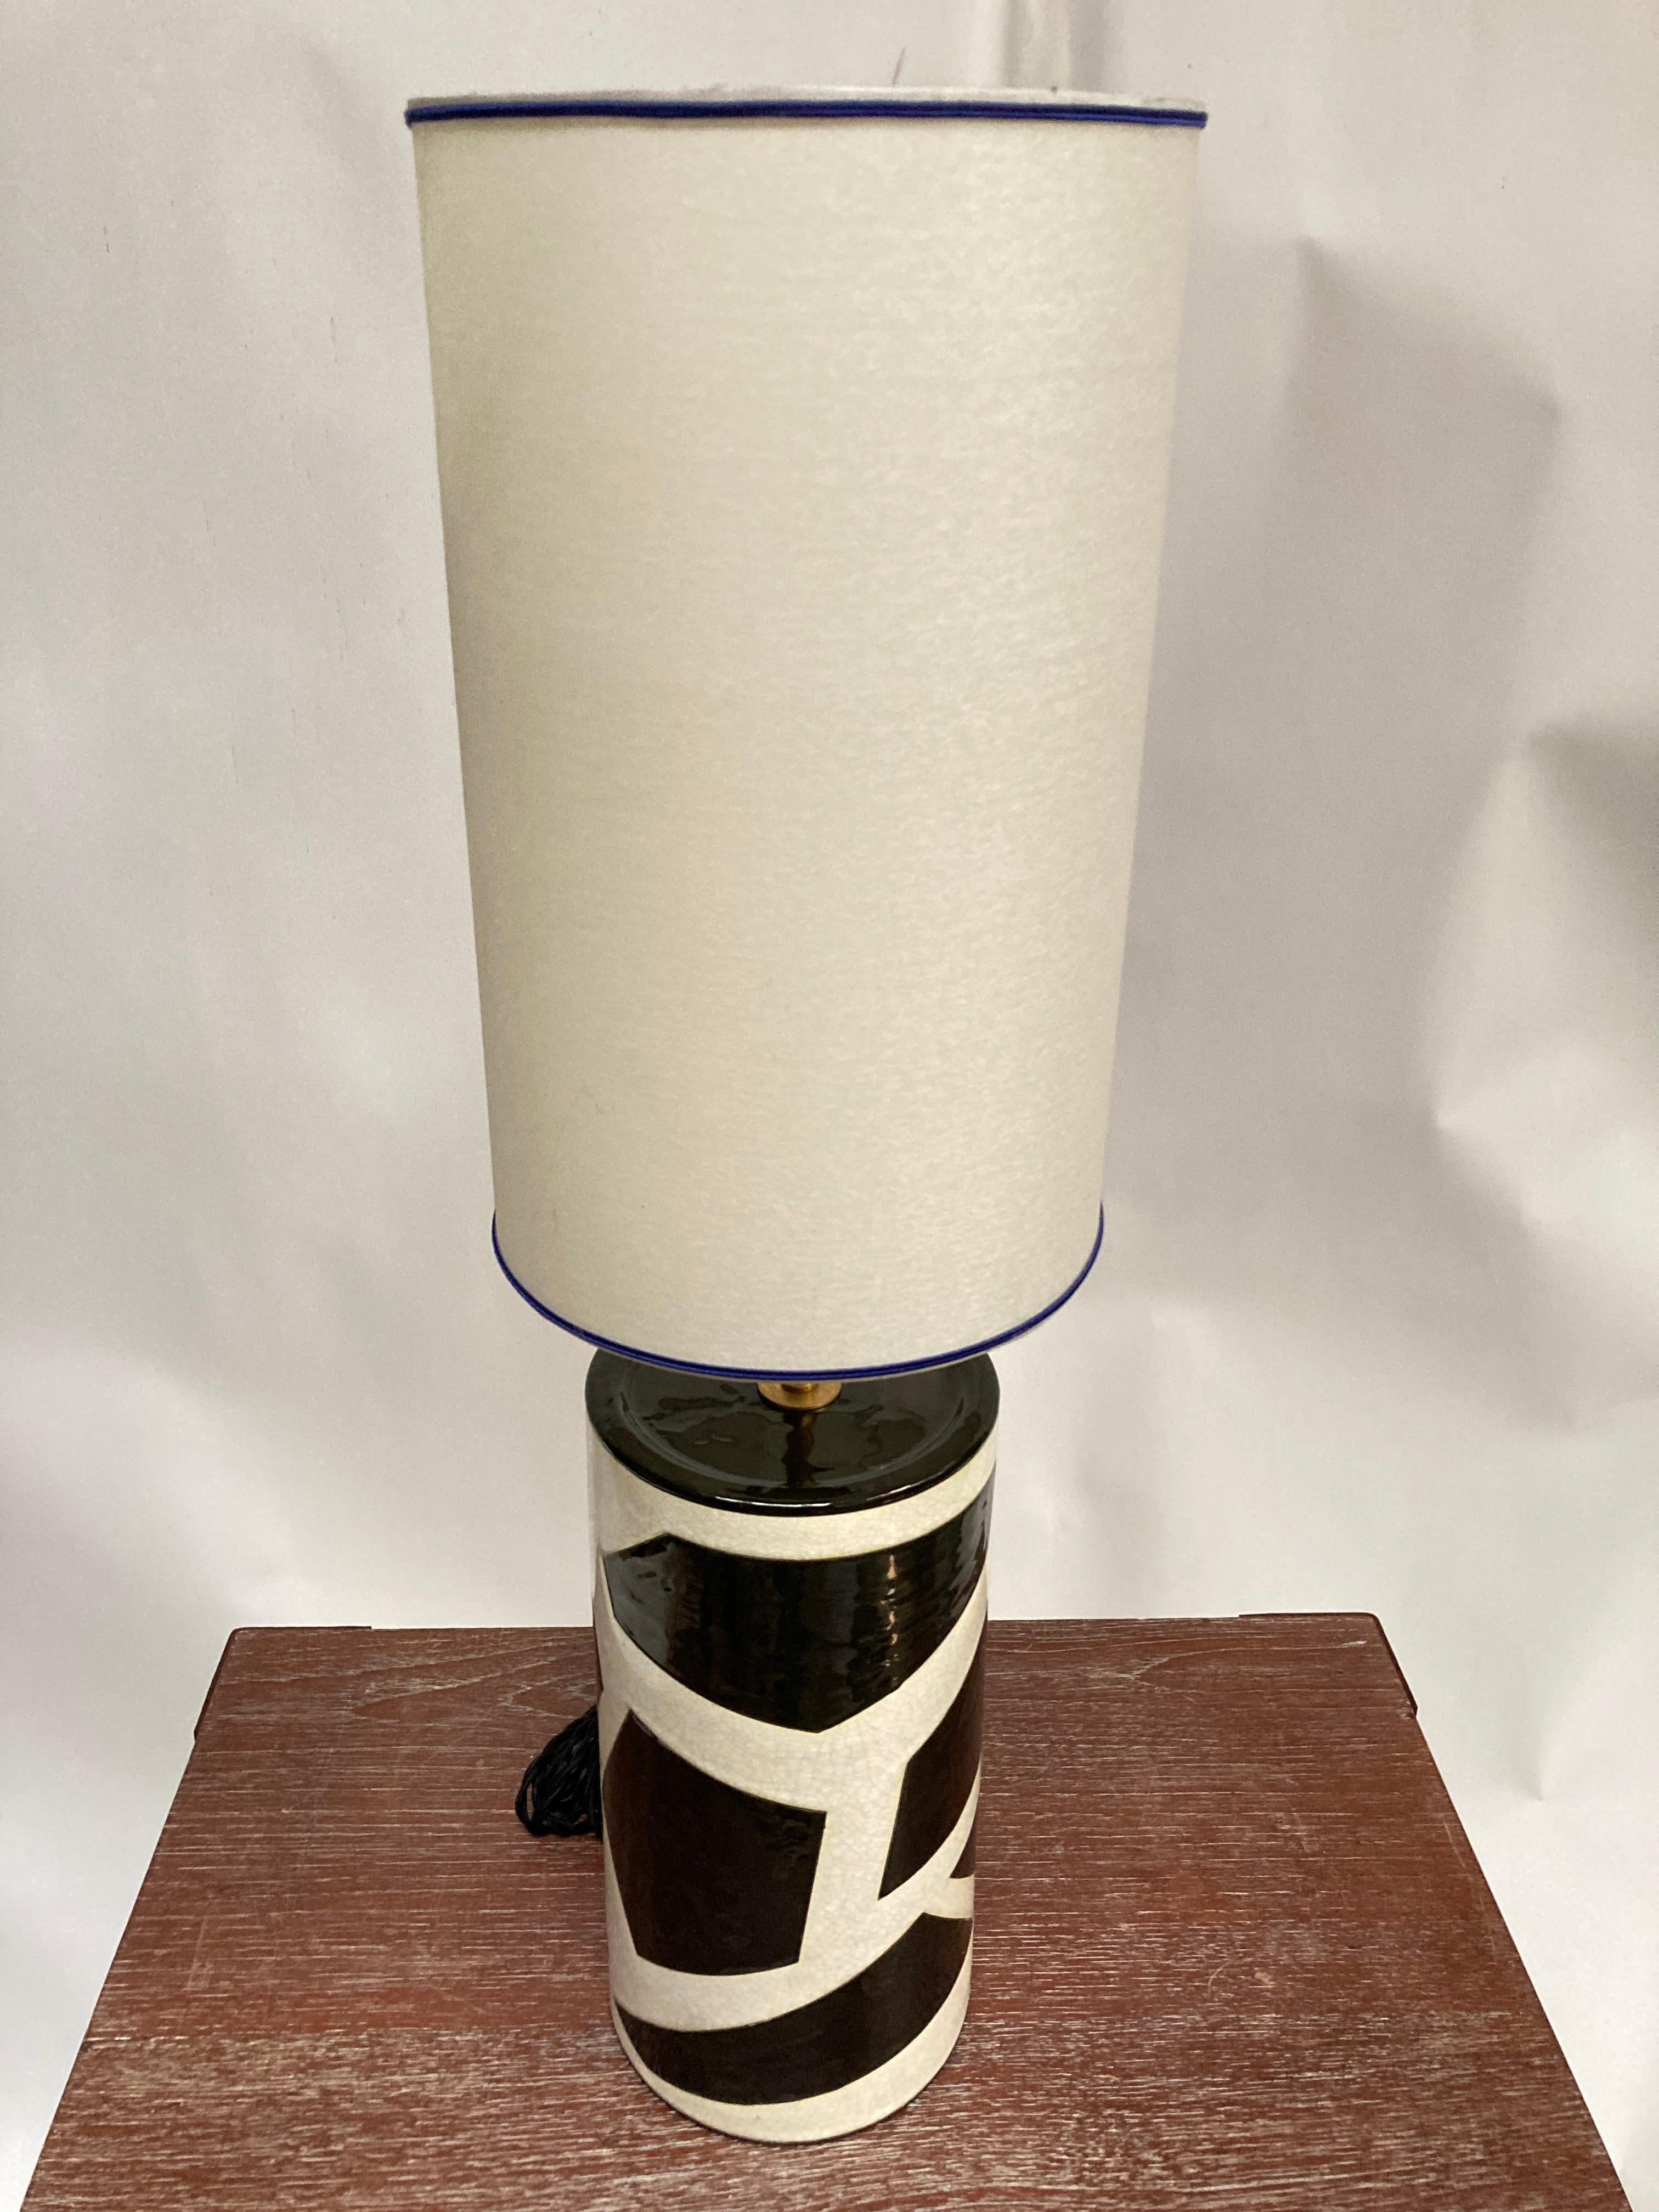 Rare  Lampe en céramique des années 1980 par Emaux de Longwy  ( Nord Est de la France )
Design/One typique des années 80
Dimensions données sans ombre
Pas d'abat-jour inclus